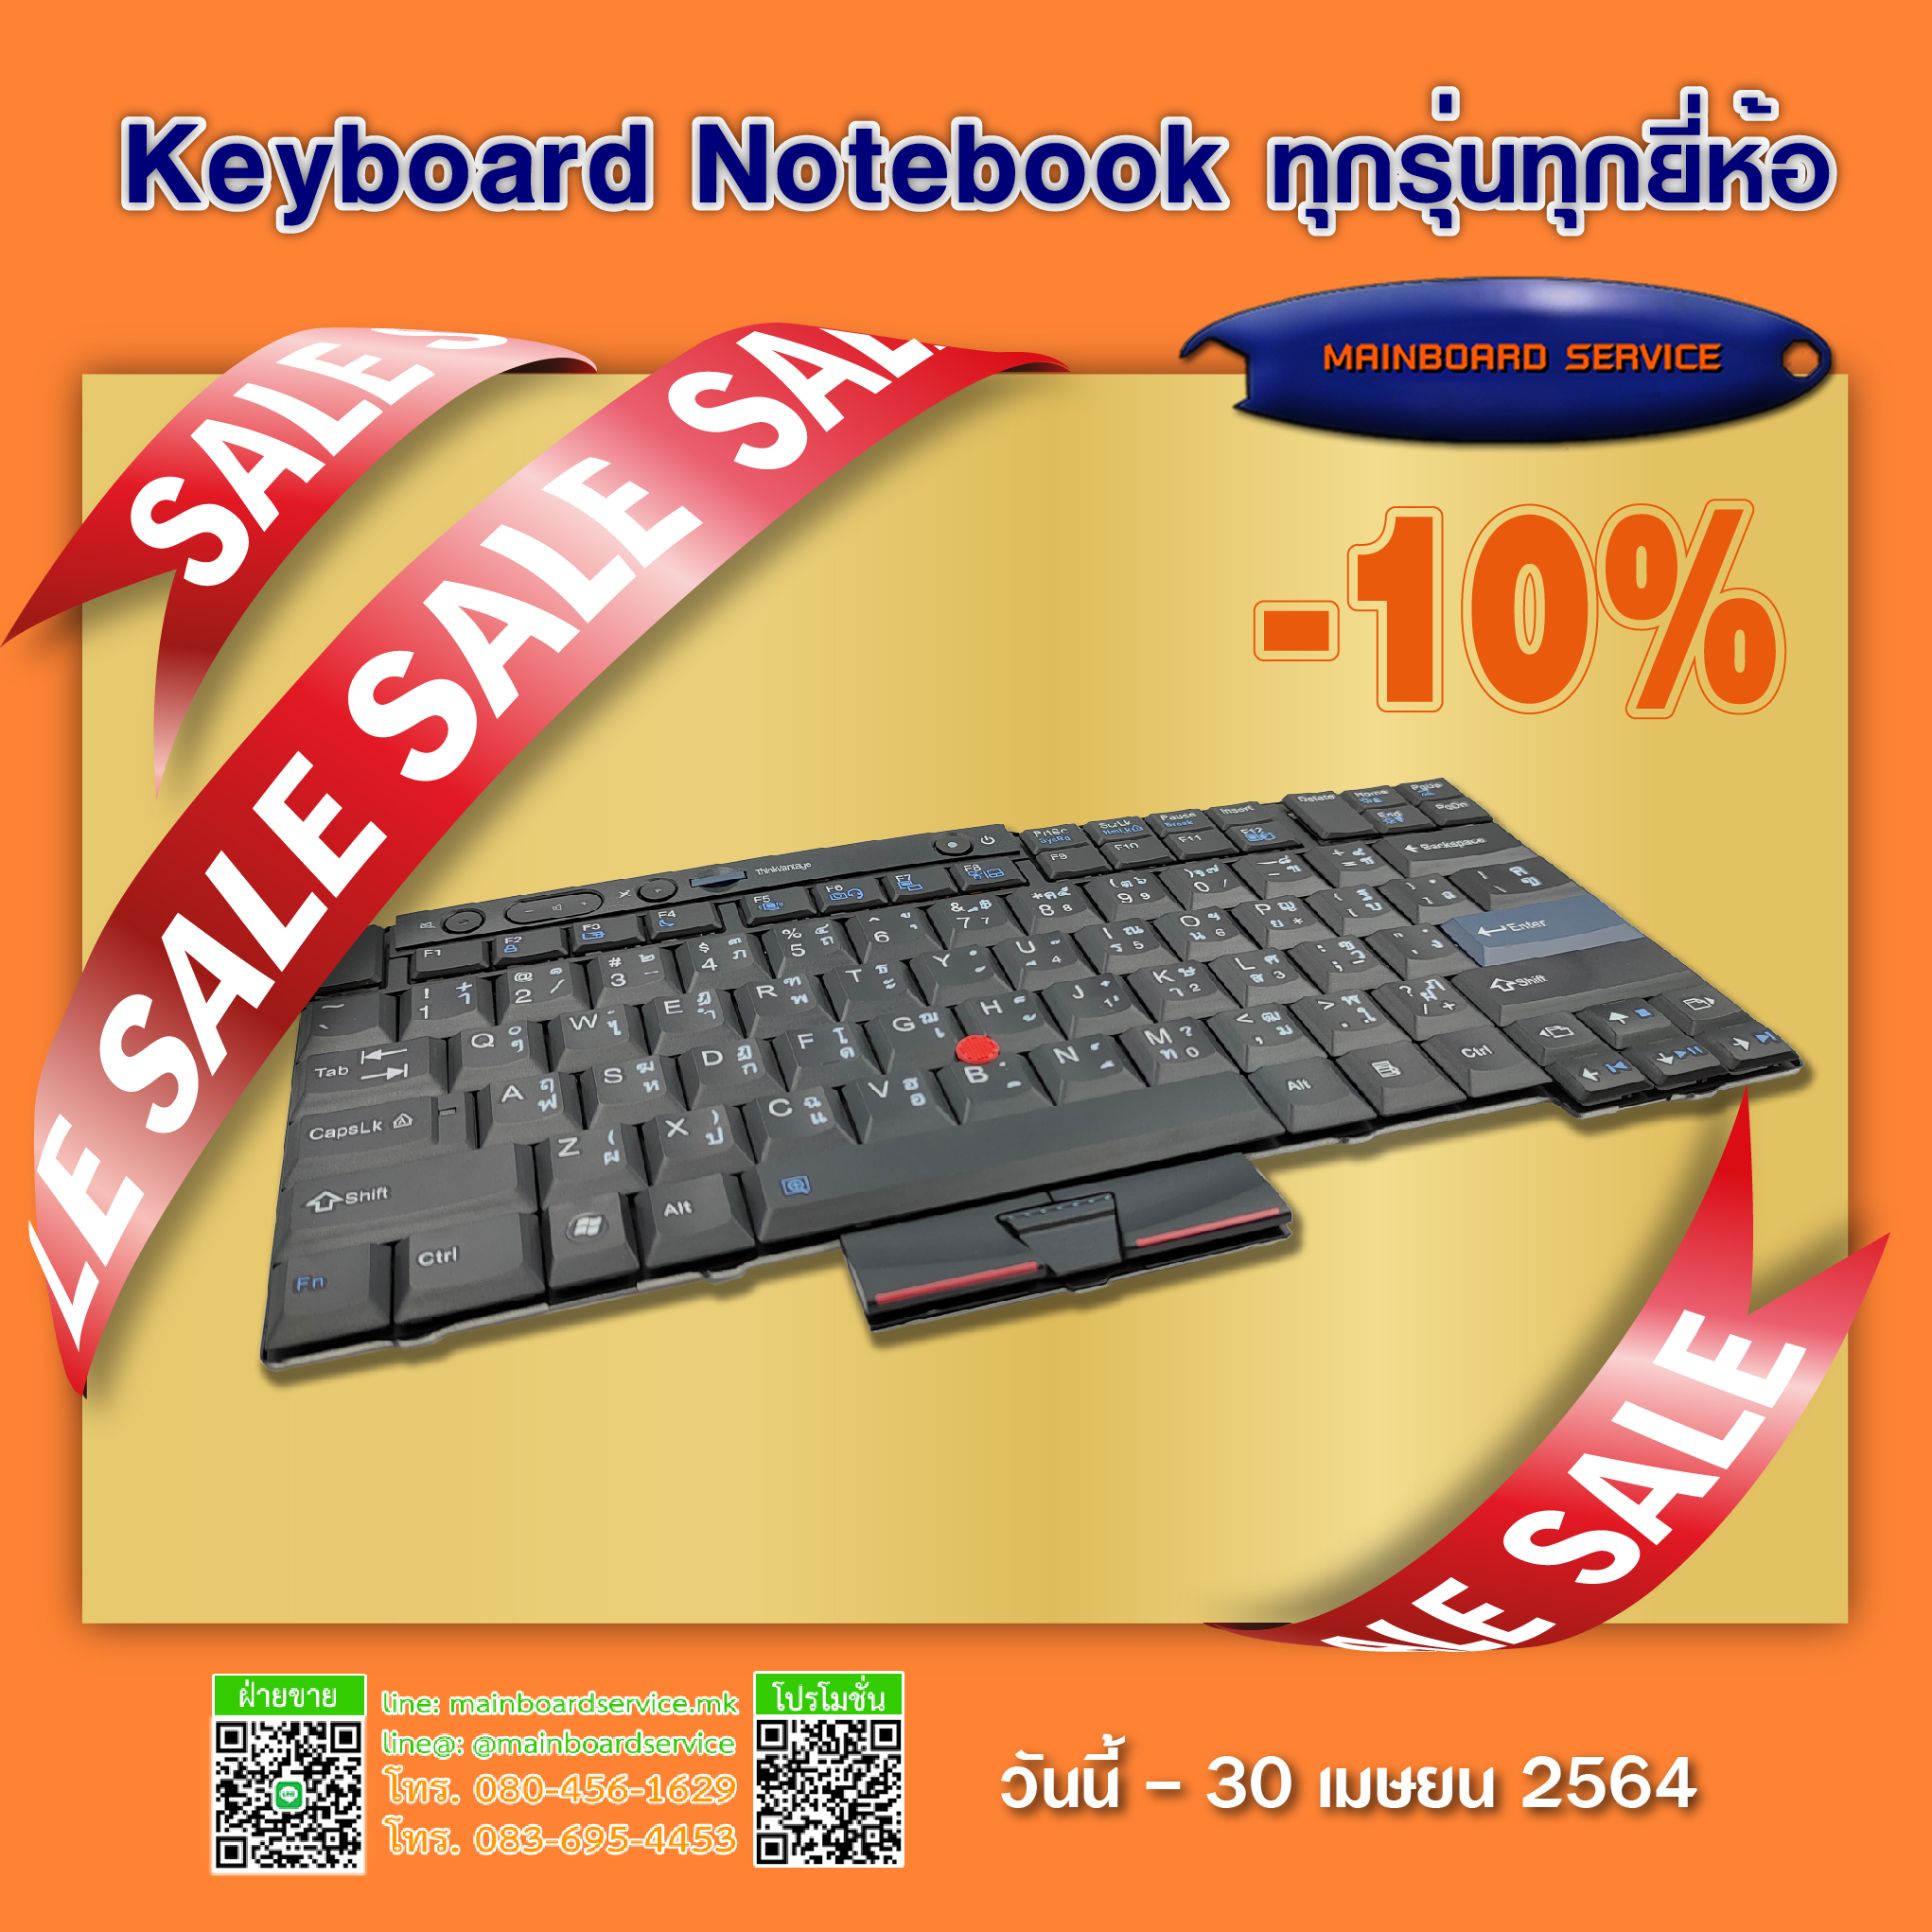 Keyboard Notebook ทุกรุ่นทุกยี่ห้อลด 10%